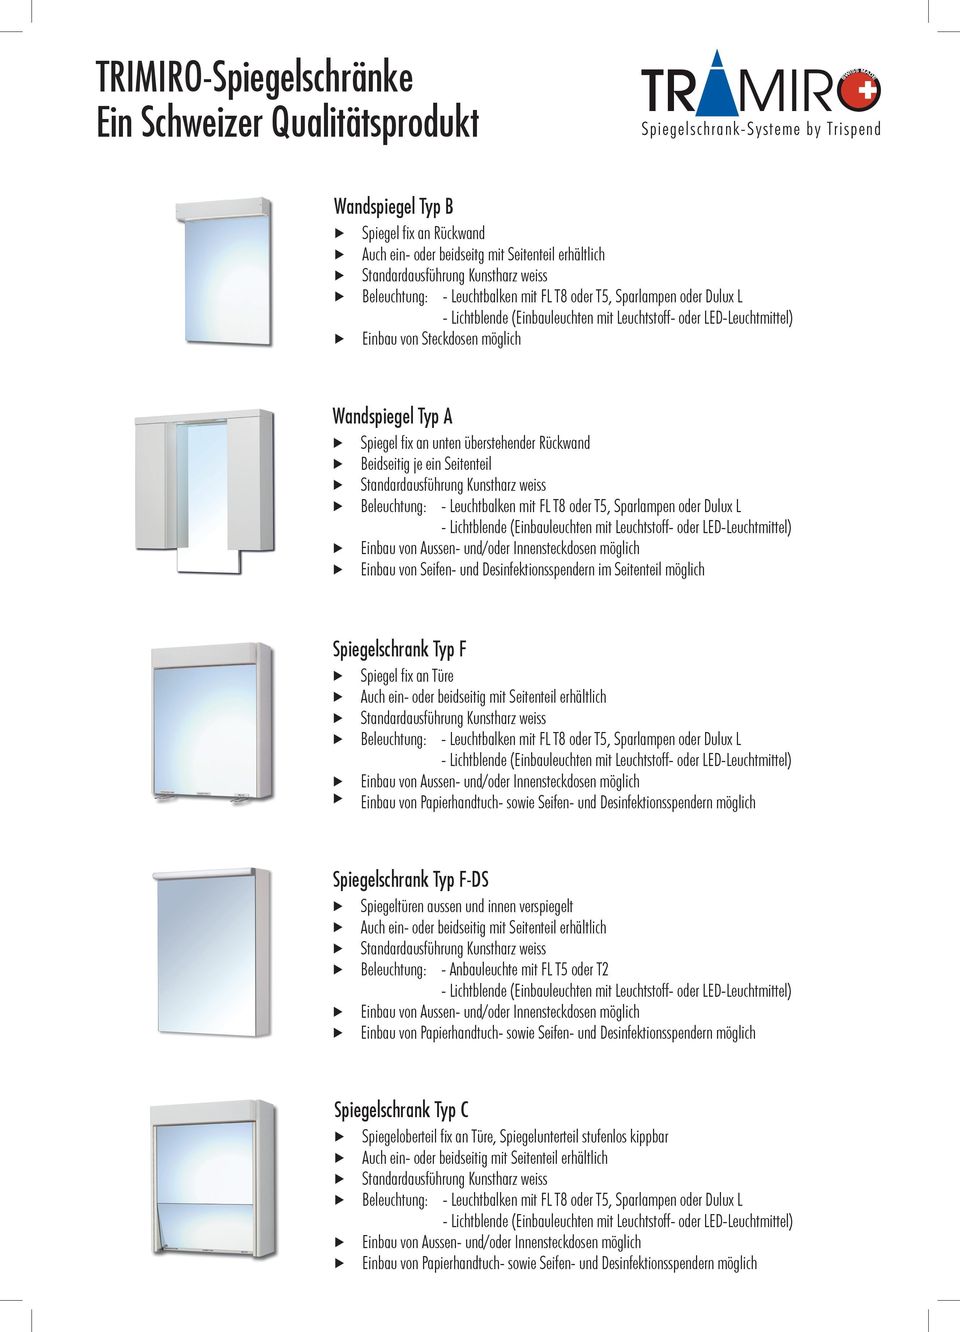 Seitenteil möglich Spiegelschrank Typ F u Spiegel fix an Türe u Einbau von Papierhandtuch- sowie Seifen- und Desinfektionsspendern möglich Spiegelschrank Typ F-DS